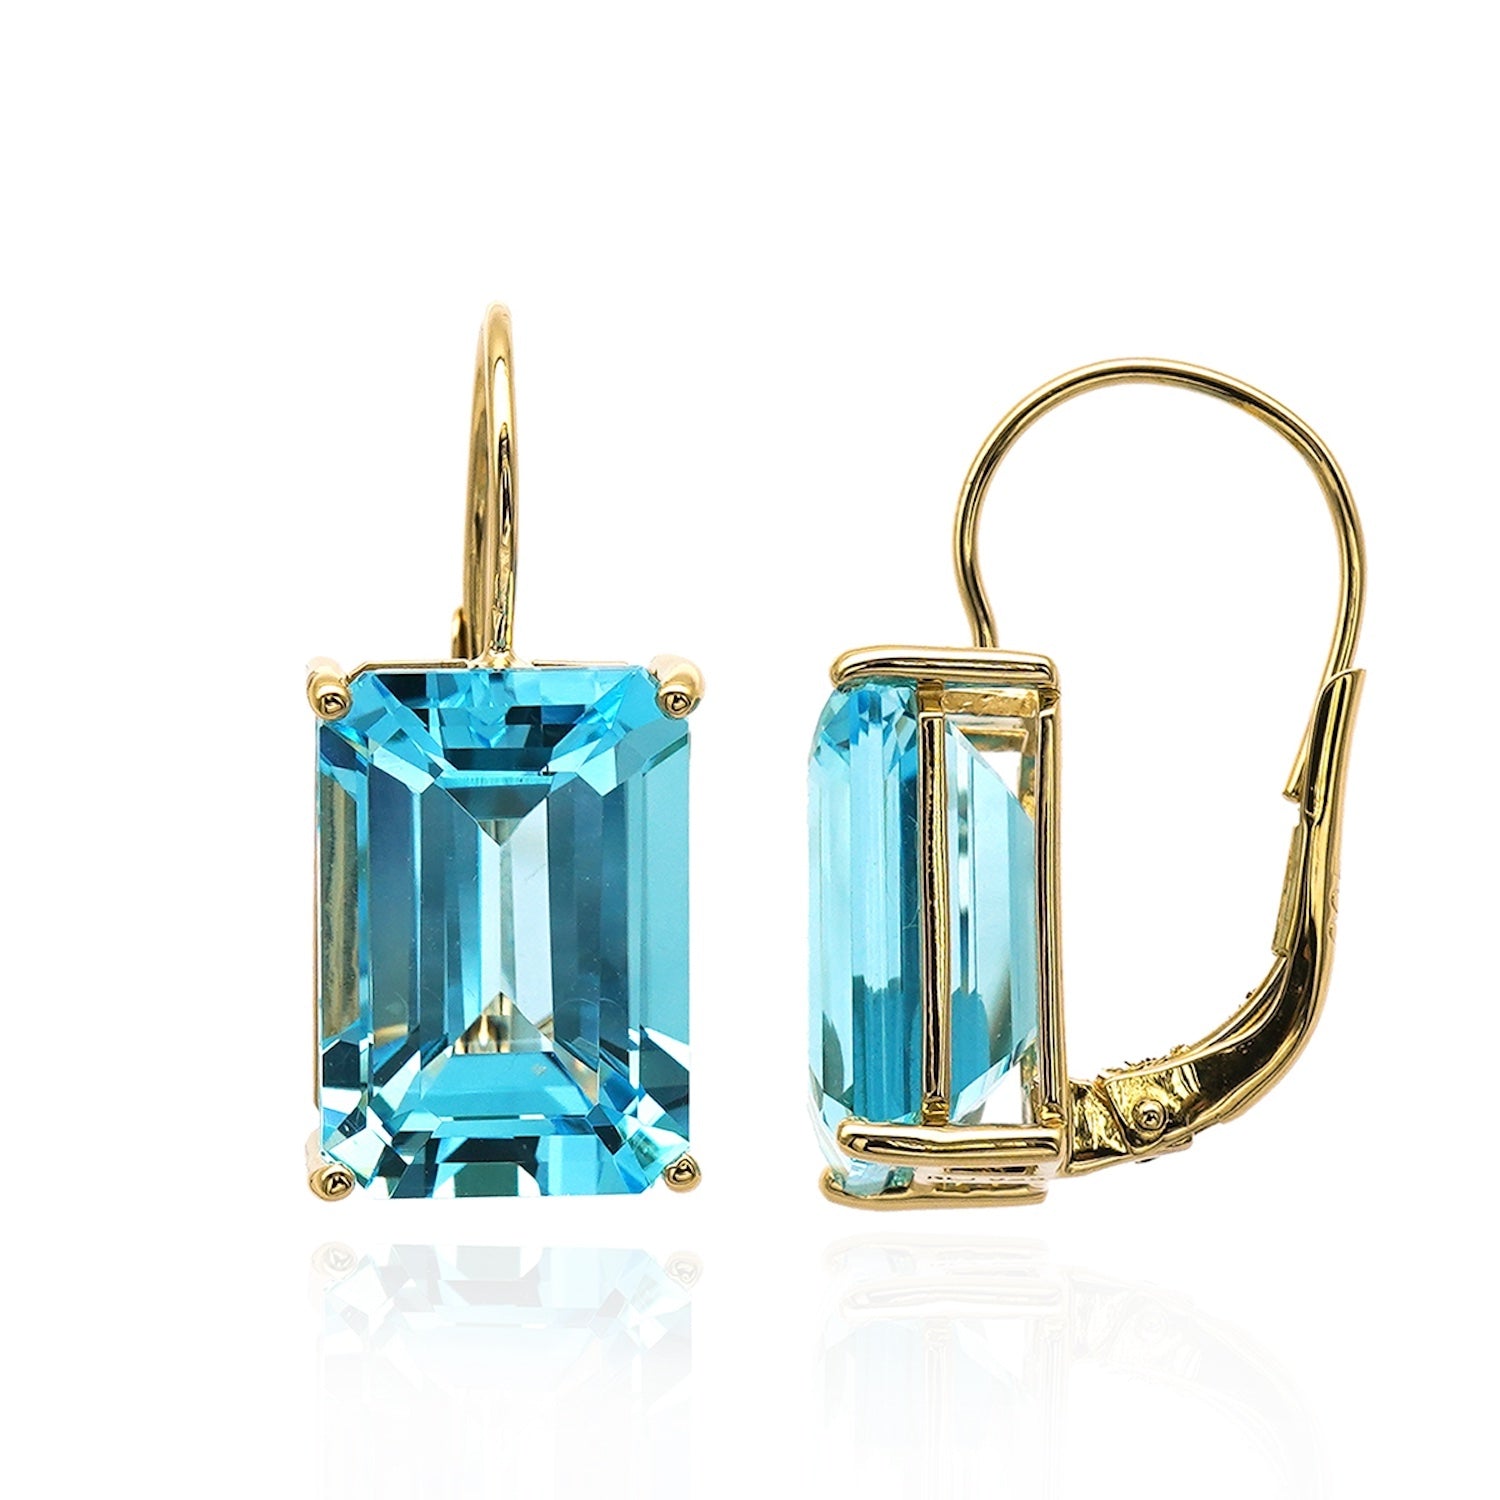 Baguette cut gemstone earrings with Swiss blue topaz